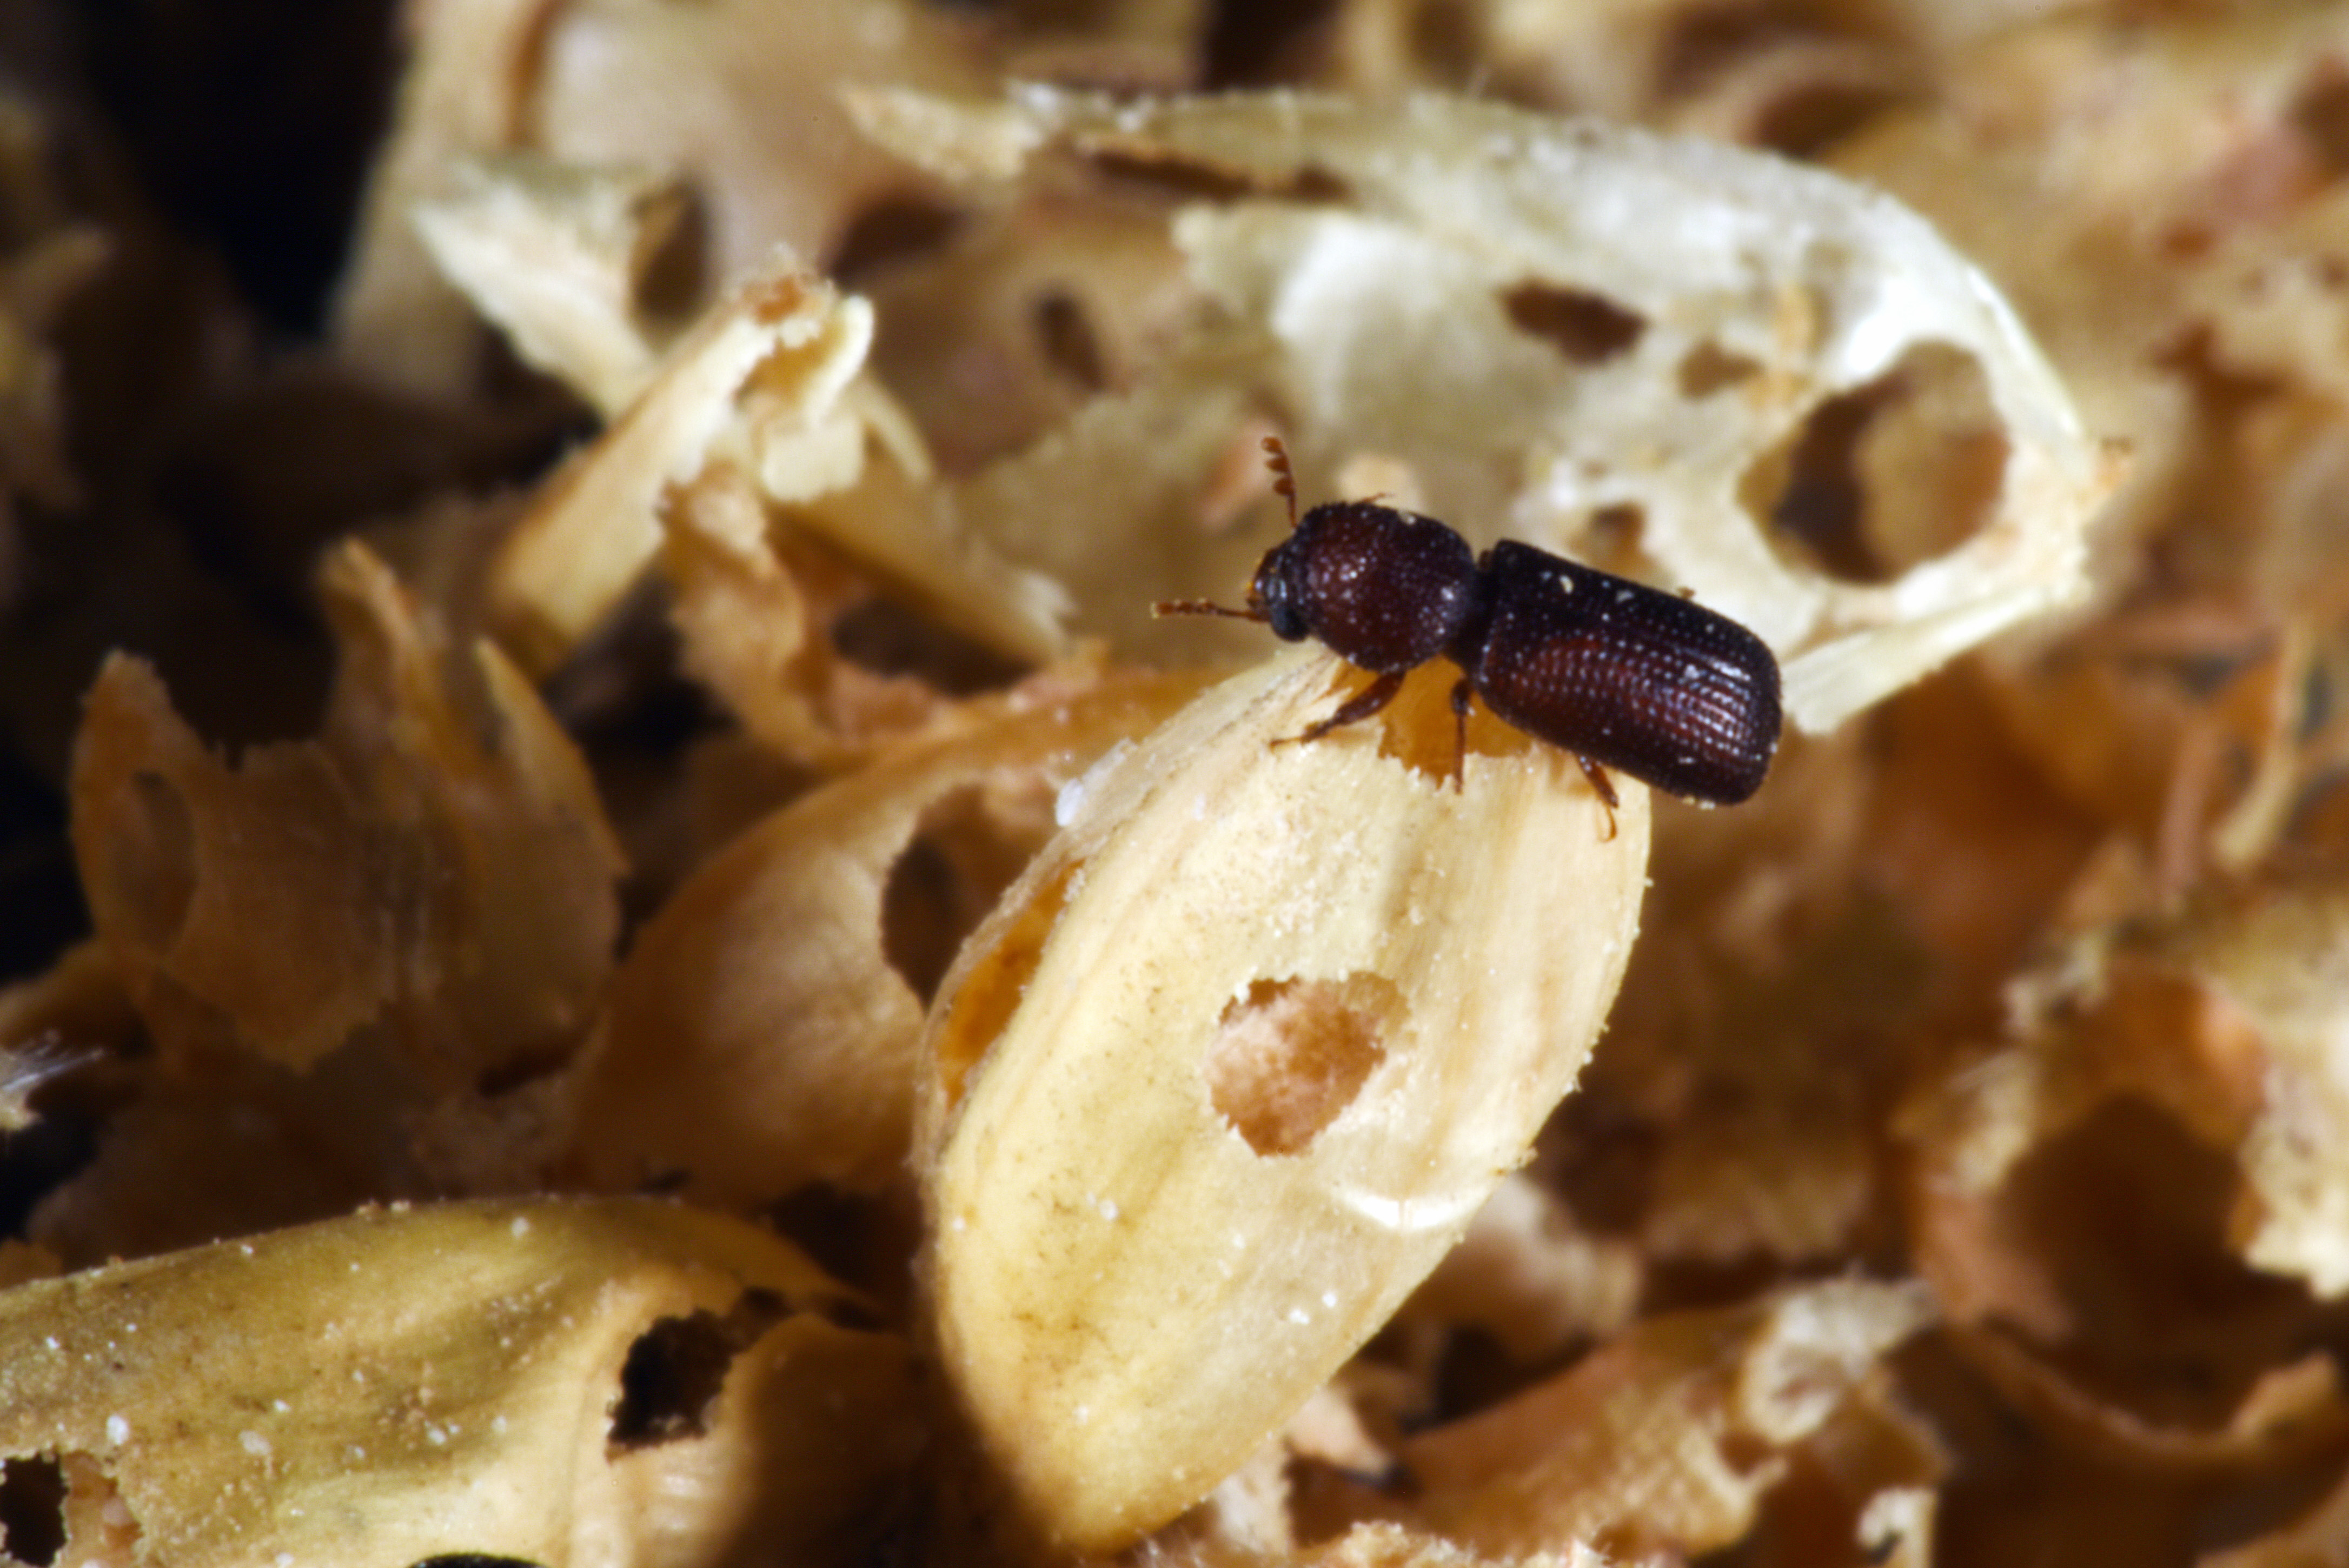 Grain Beetle Control How To Get Rid of Grain Beetles